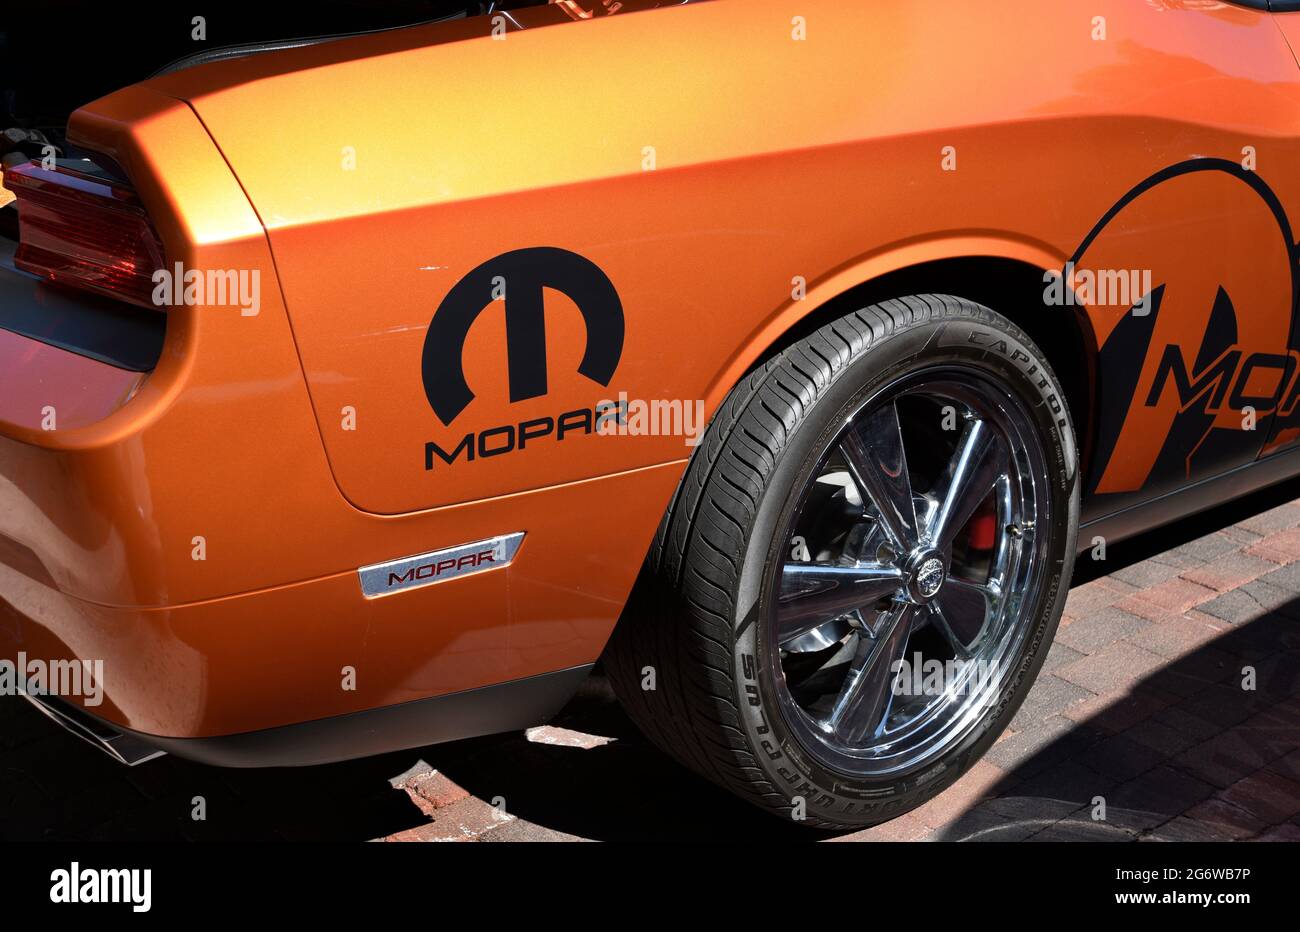 Ein Oldtimer der Marke Mopar (Chrysler Motor Parts Corp.), der auf einer Automesse in Santa Fe, New Mexico, ausgestellt wird. Stockfoto